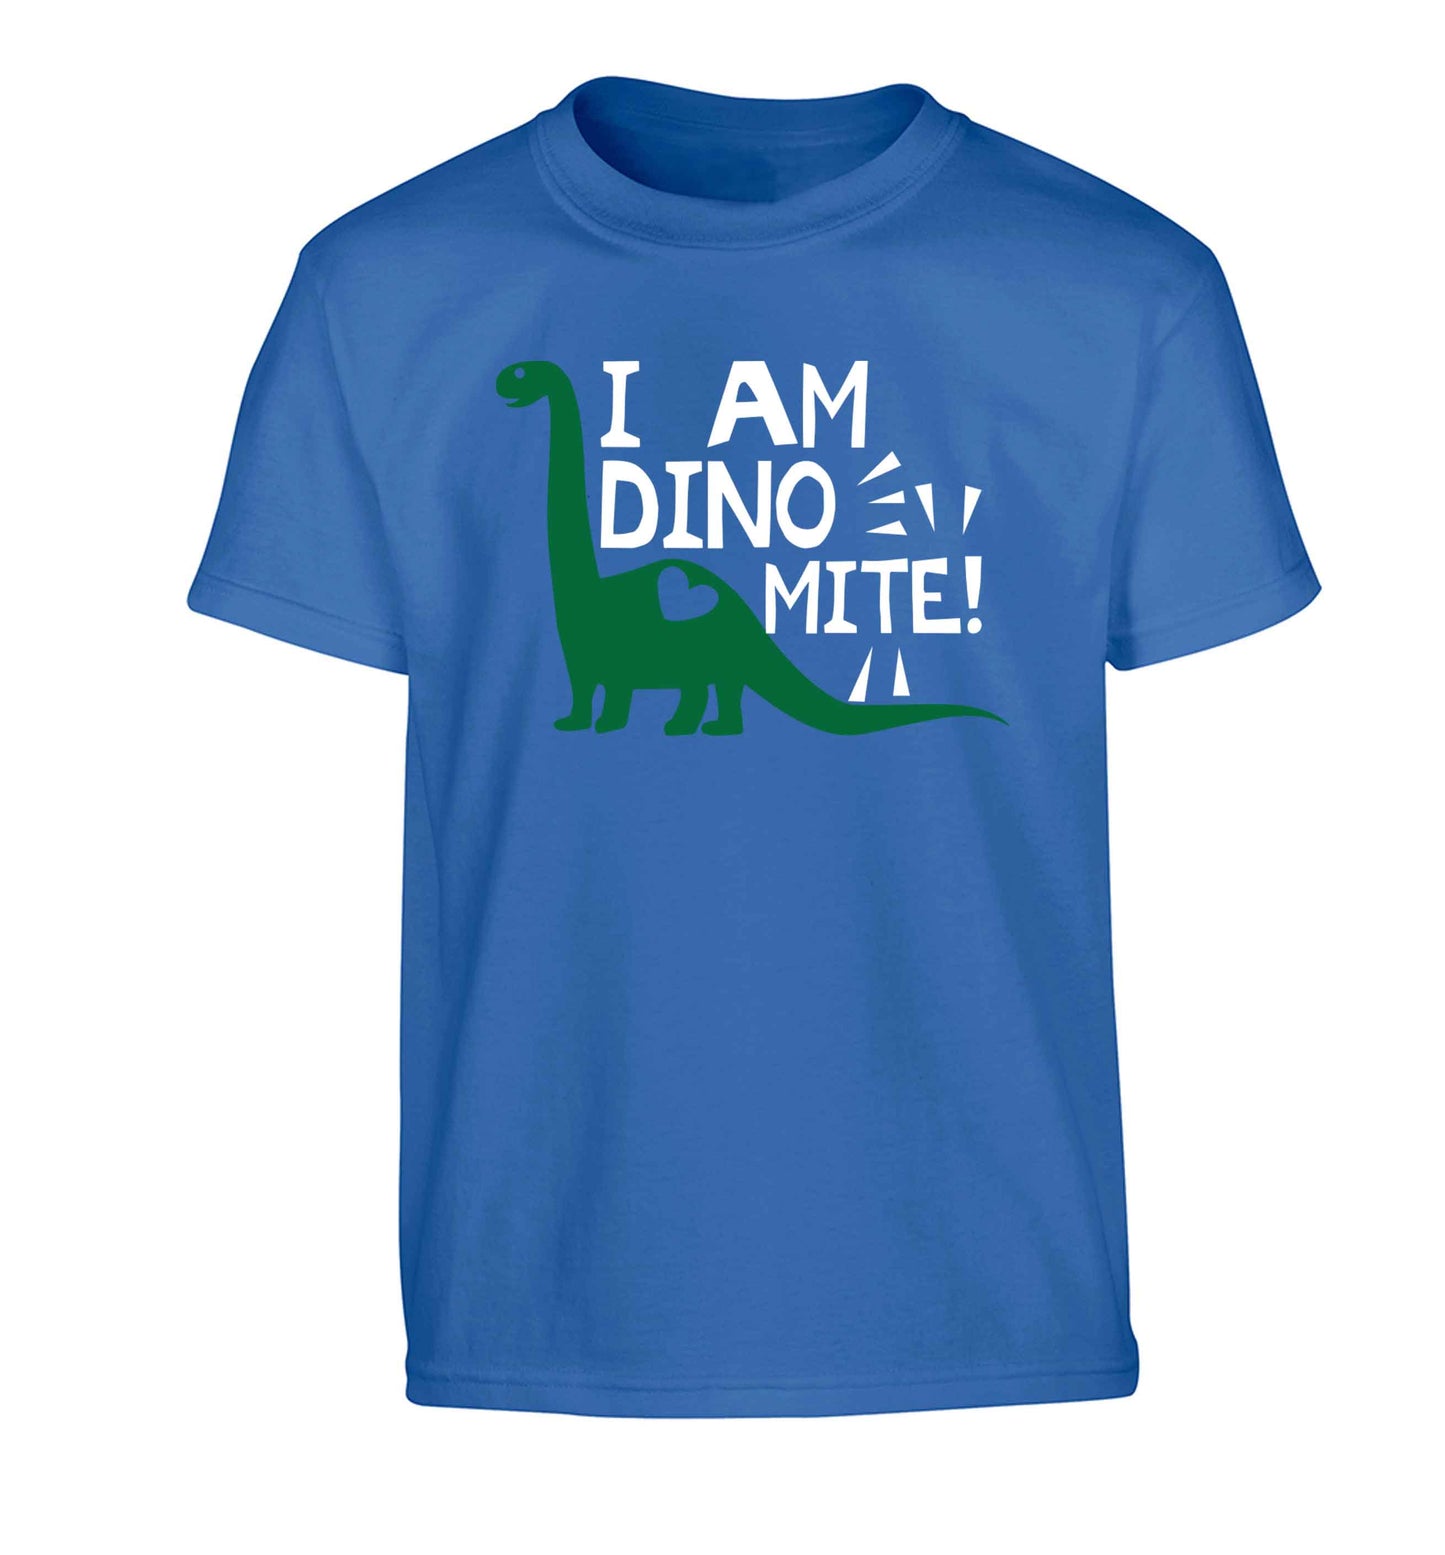 I am dinomite! Children's blue Tshirt 12-13 Years